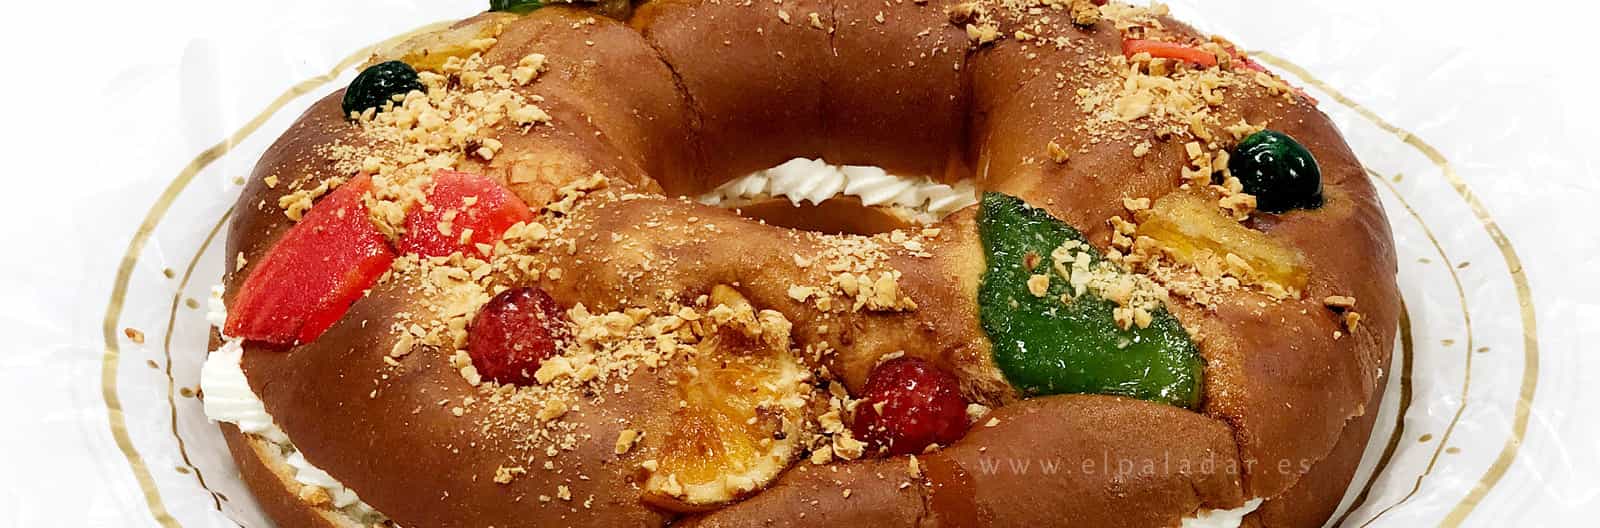 El mejor Roscón de Reyes que podrás encontrar.